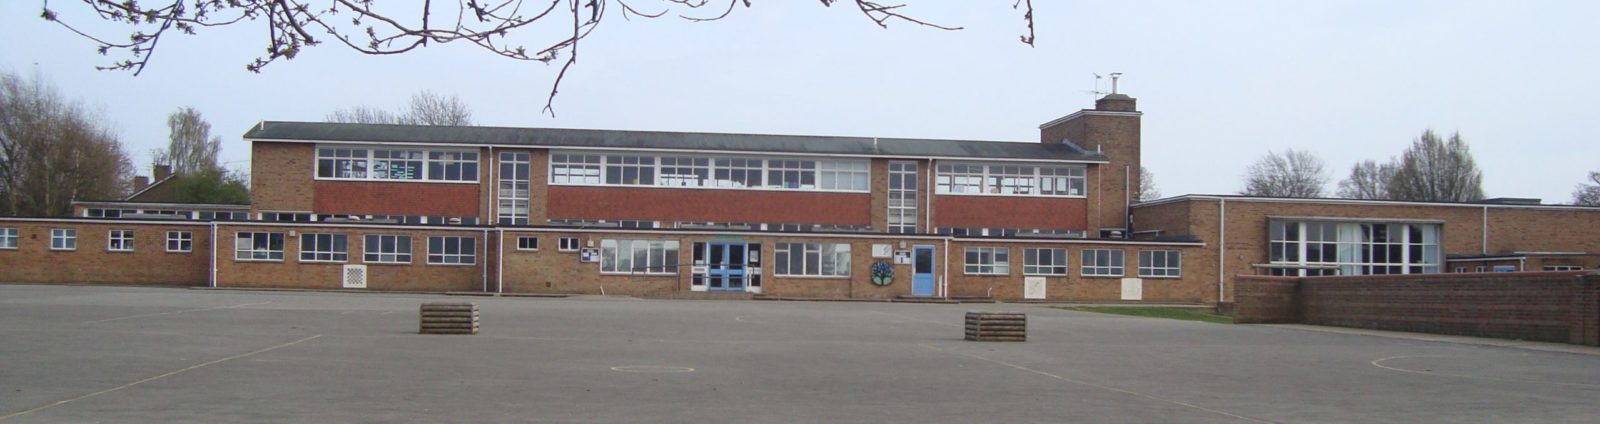 Crawley School